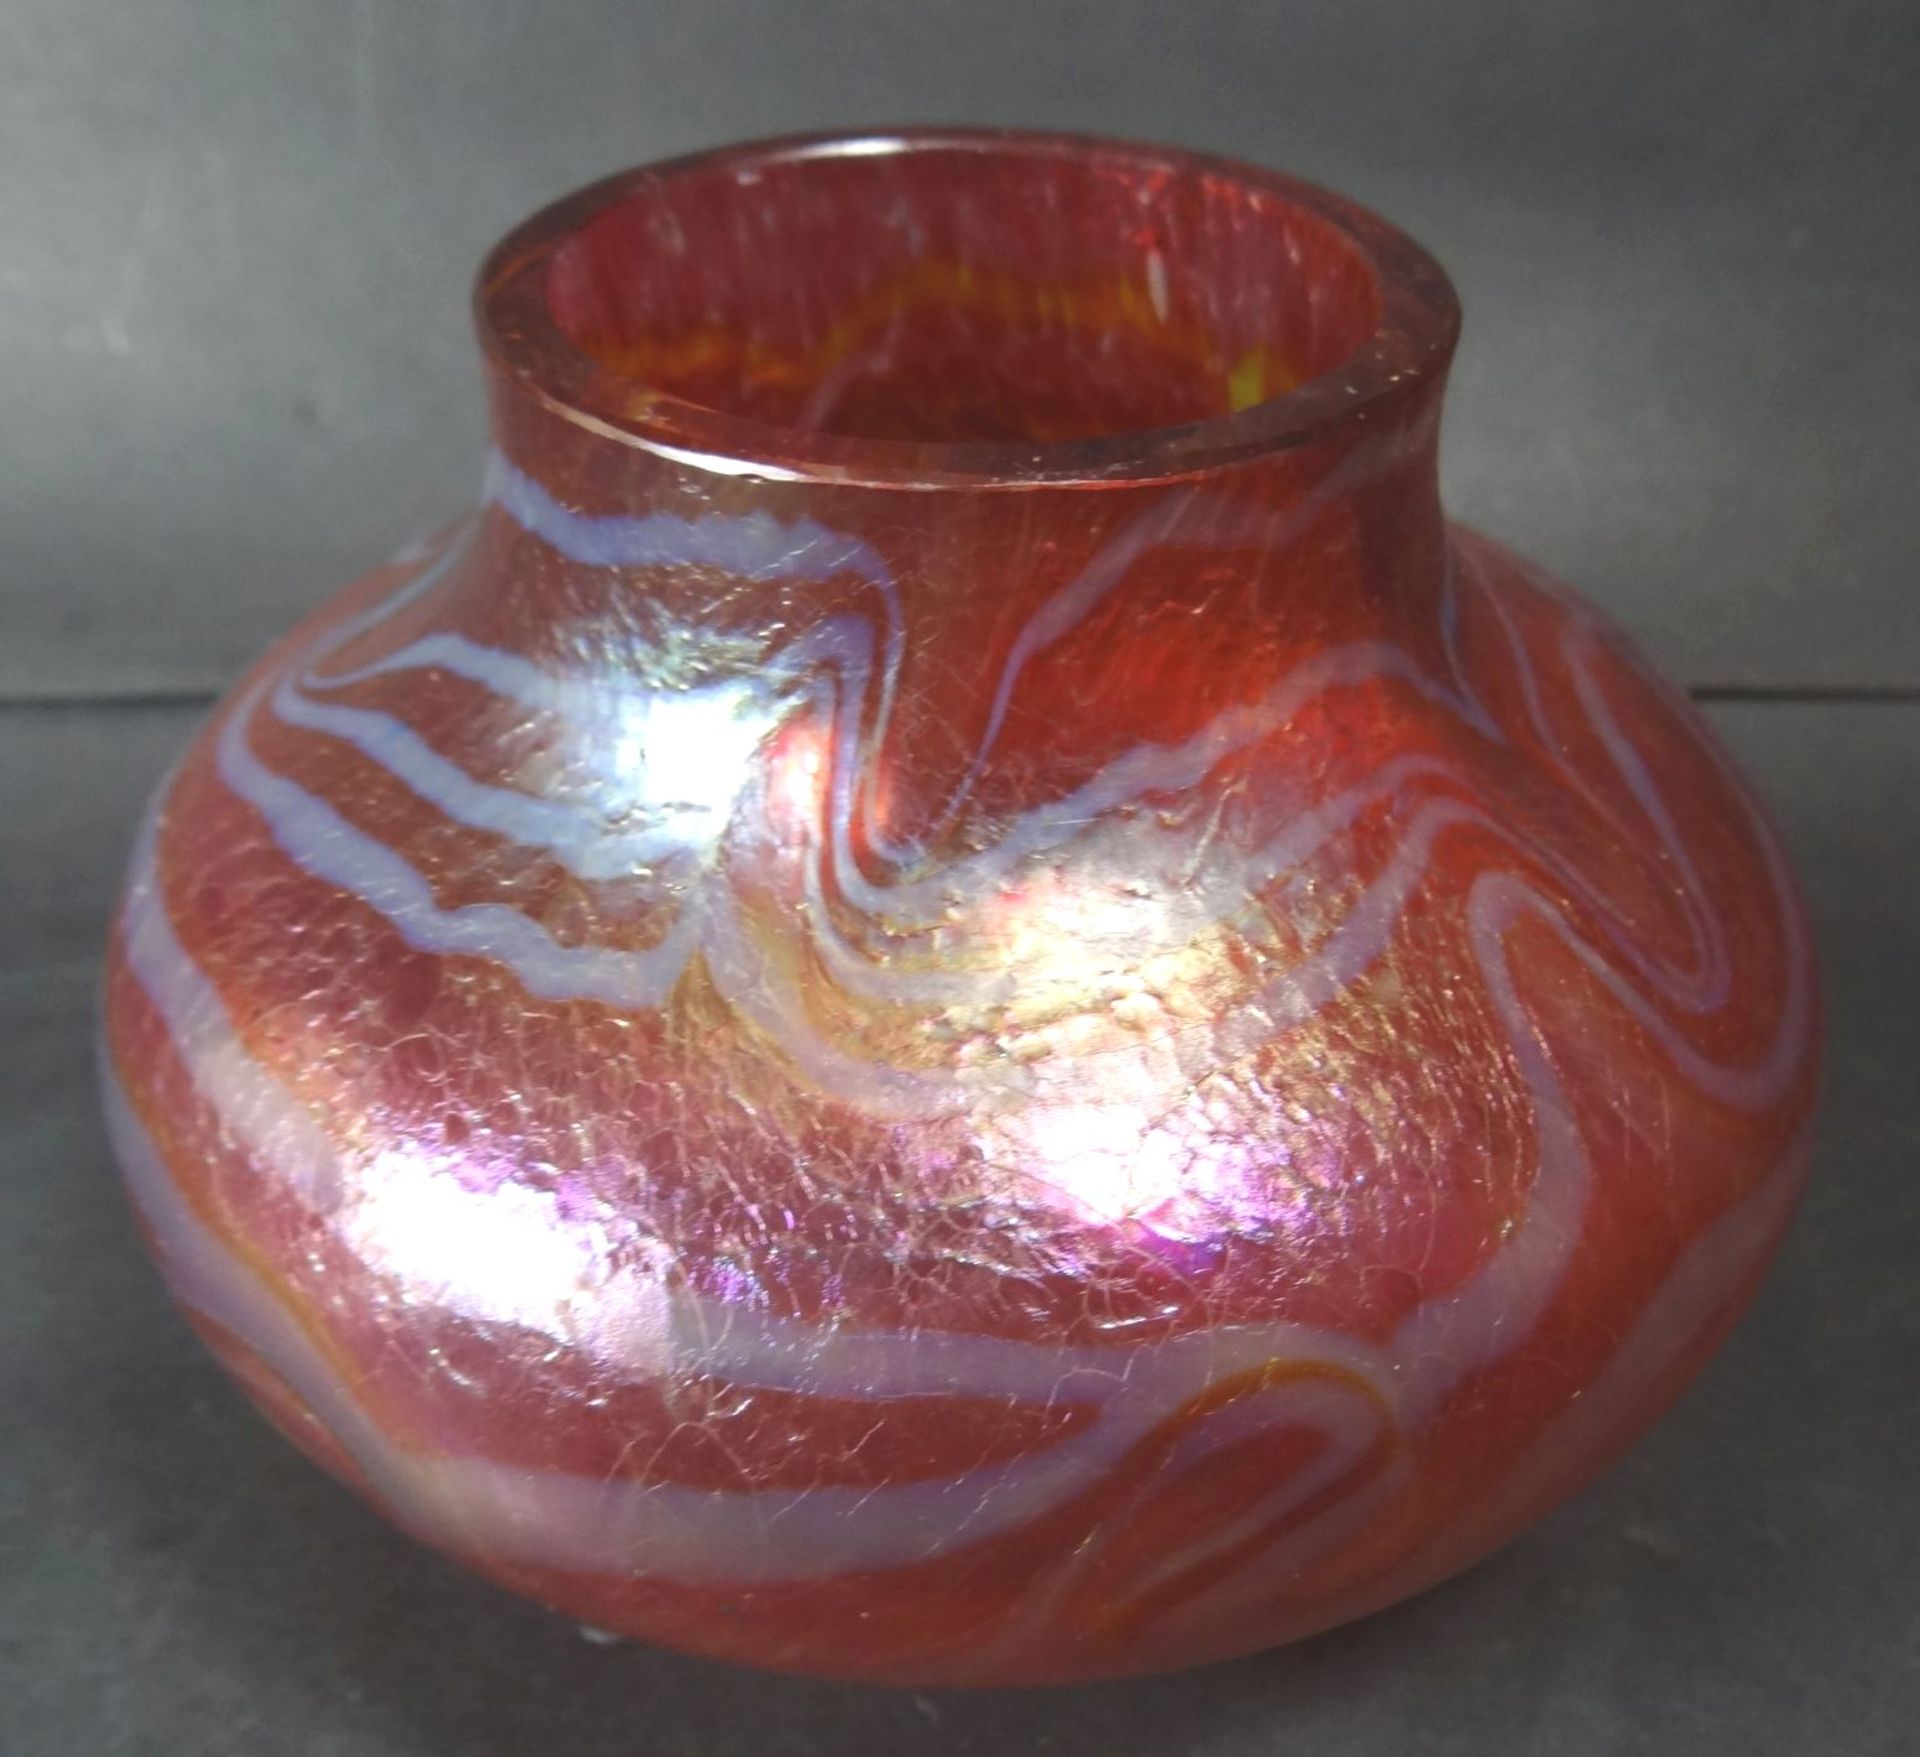 kl. Vase, wohl Loetz, rot, H-8 cm, D-12 cm- - -22.61 % buyer's premium on the hammer priceVAT margin